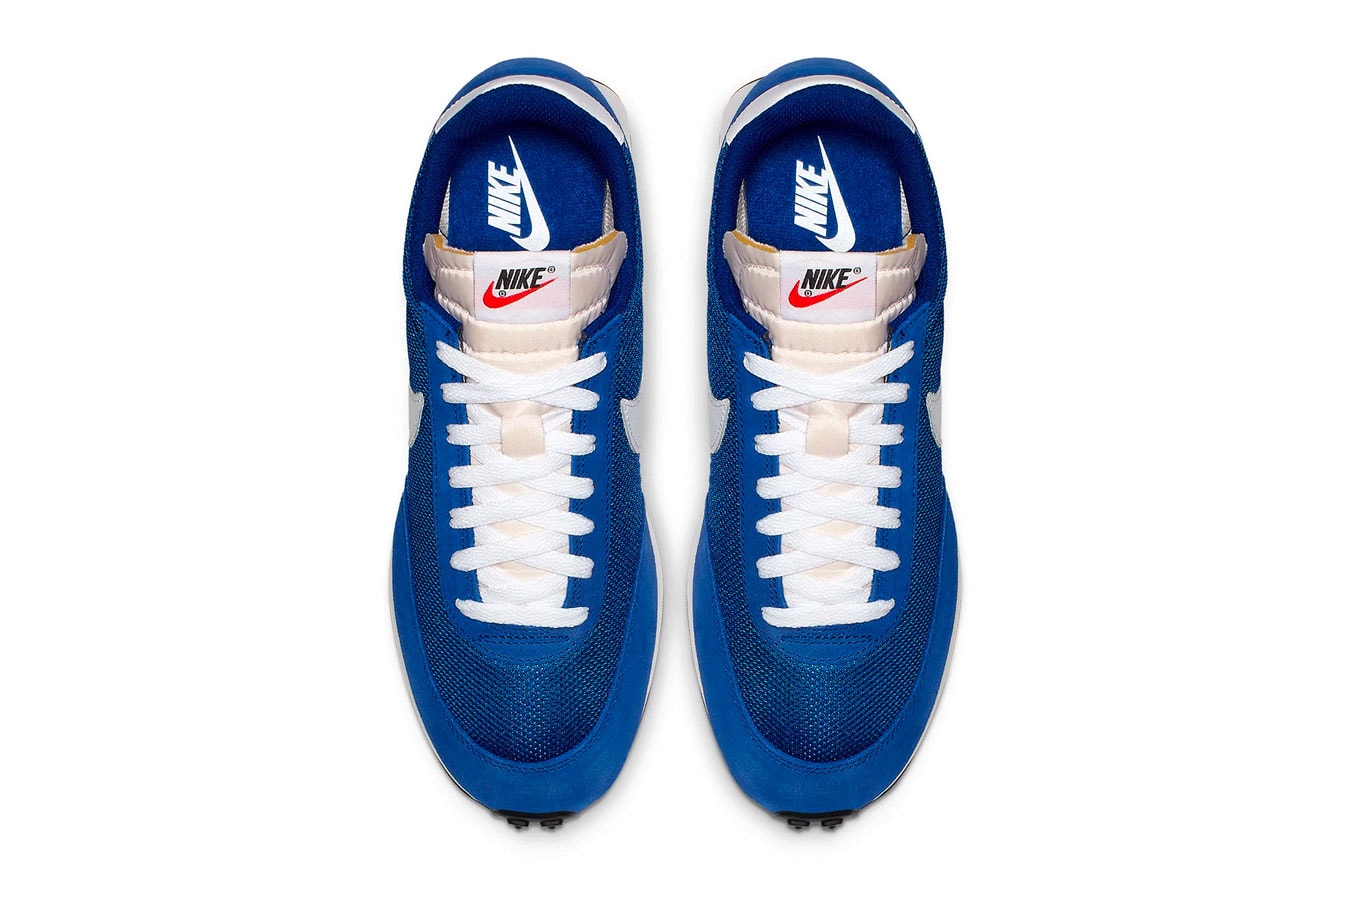 Nike Air Tailwind 79 OG Royal Blue Re Release december 2018 blue white kicks sneakers footwear 